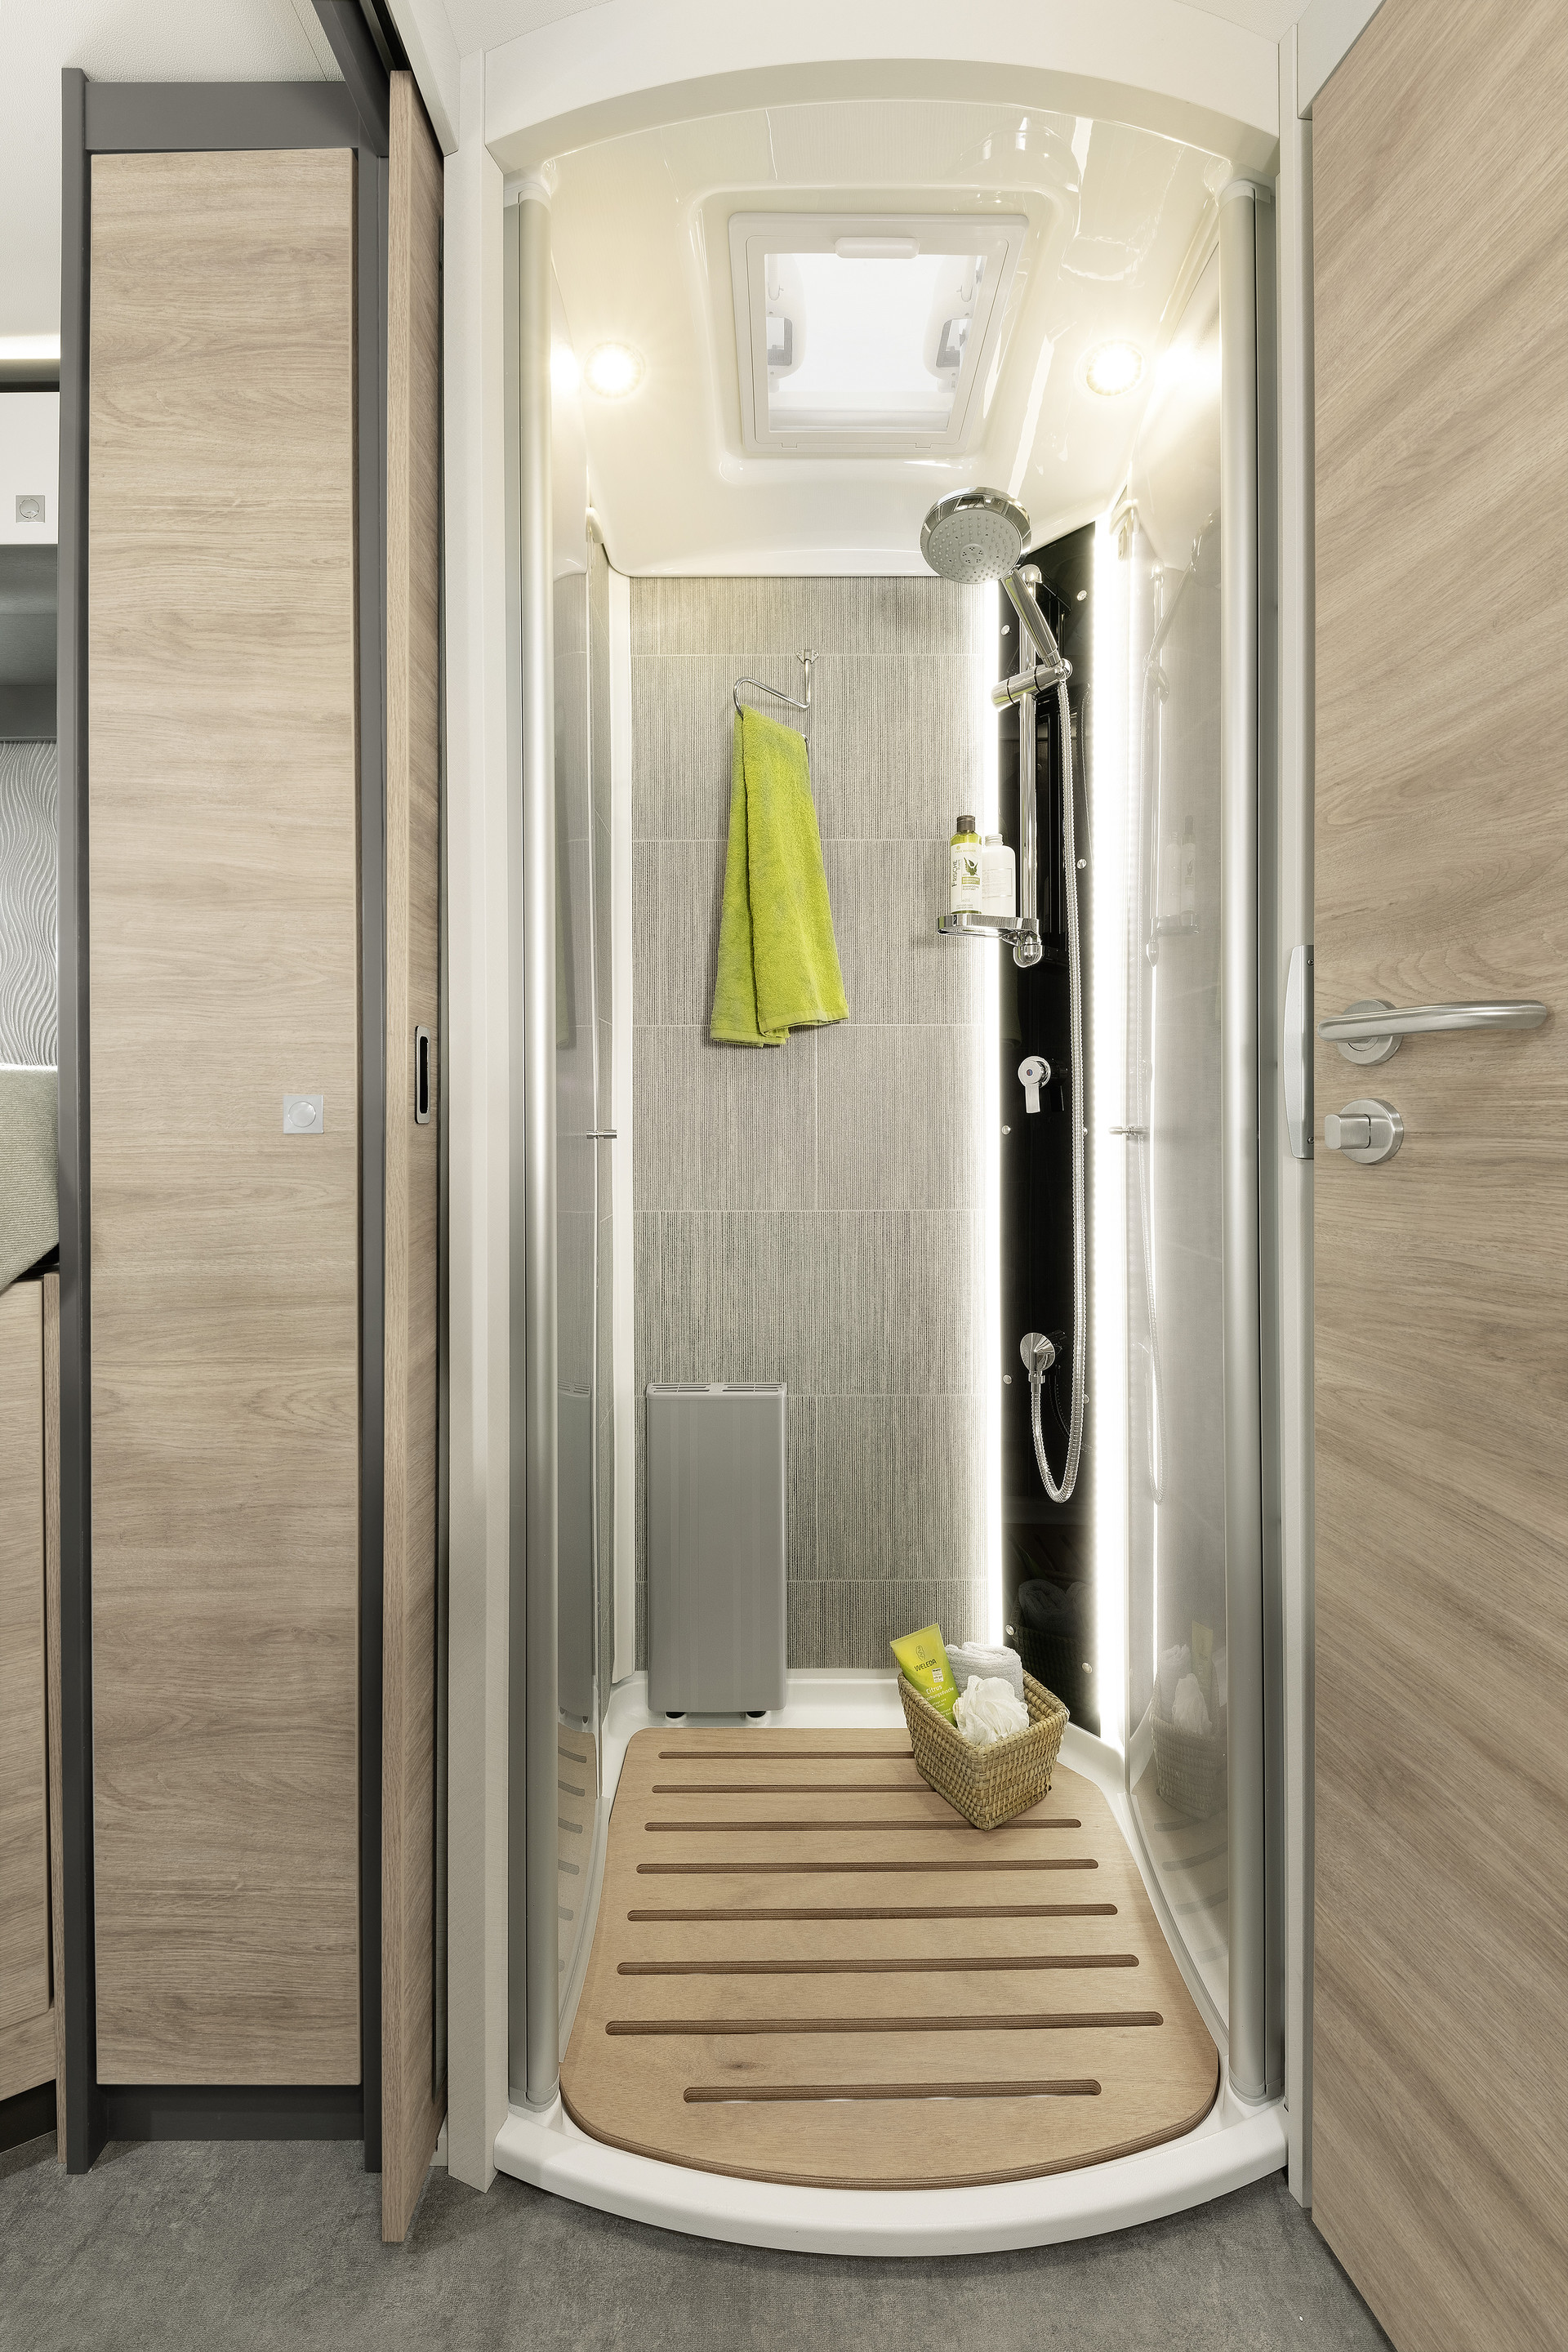 Veel ruimte is er ook in de aparte douche met verlichte armatuur.